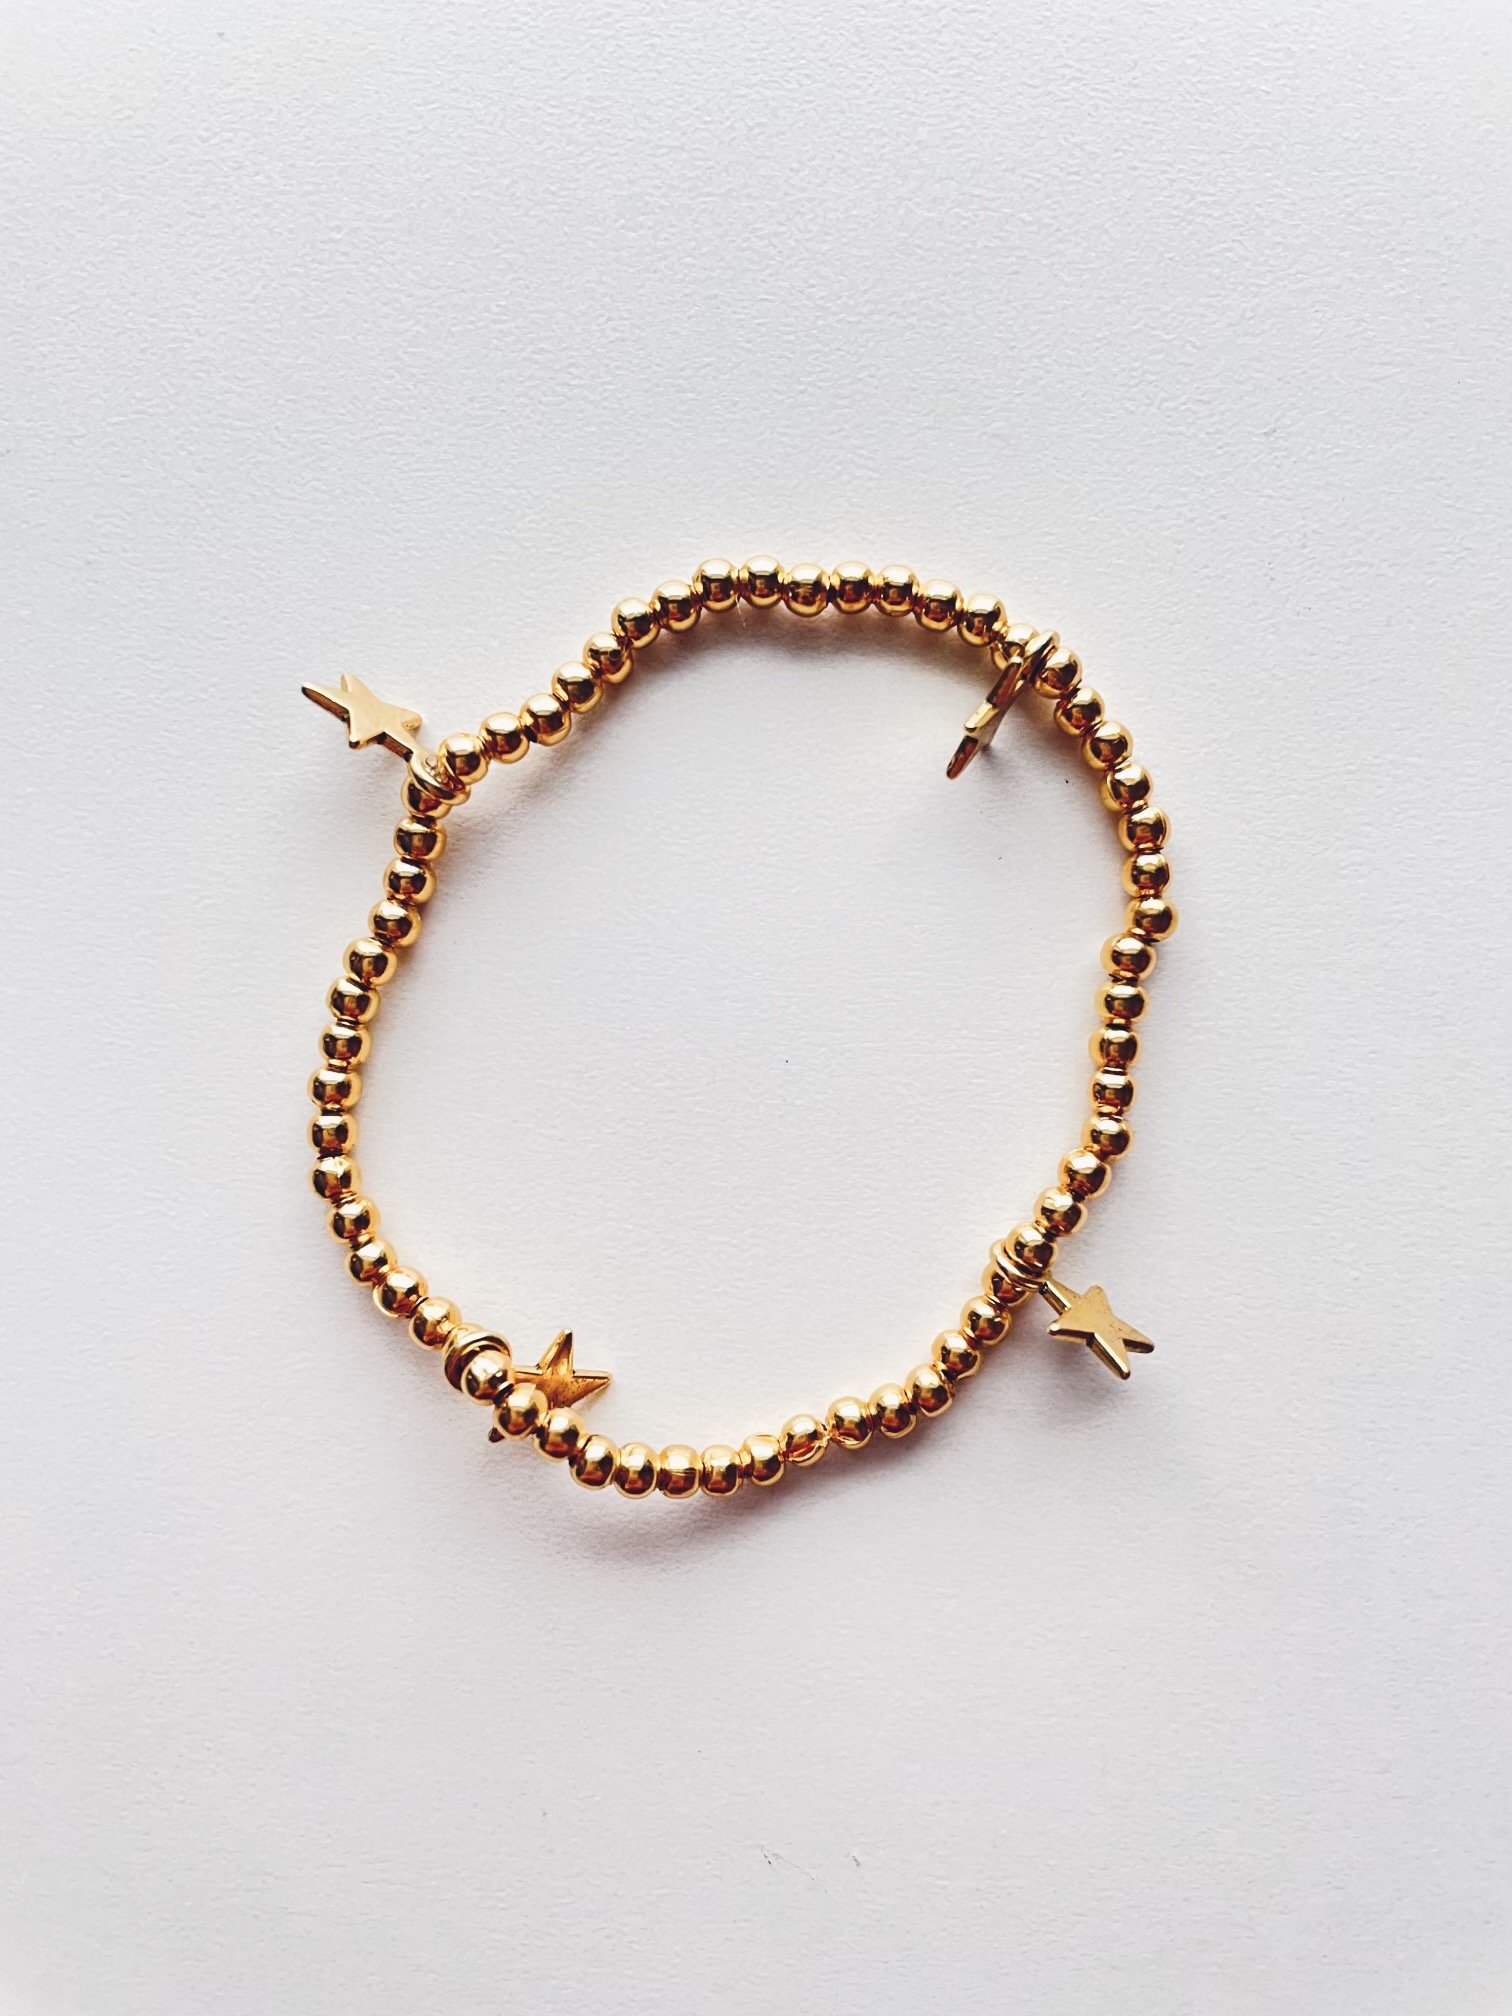 Image of gold star bracelet